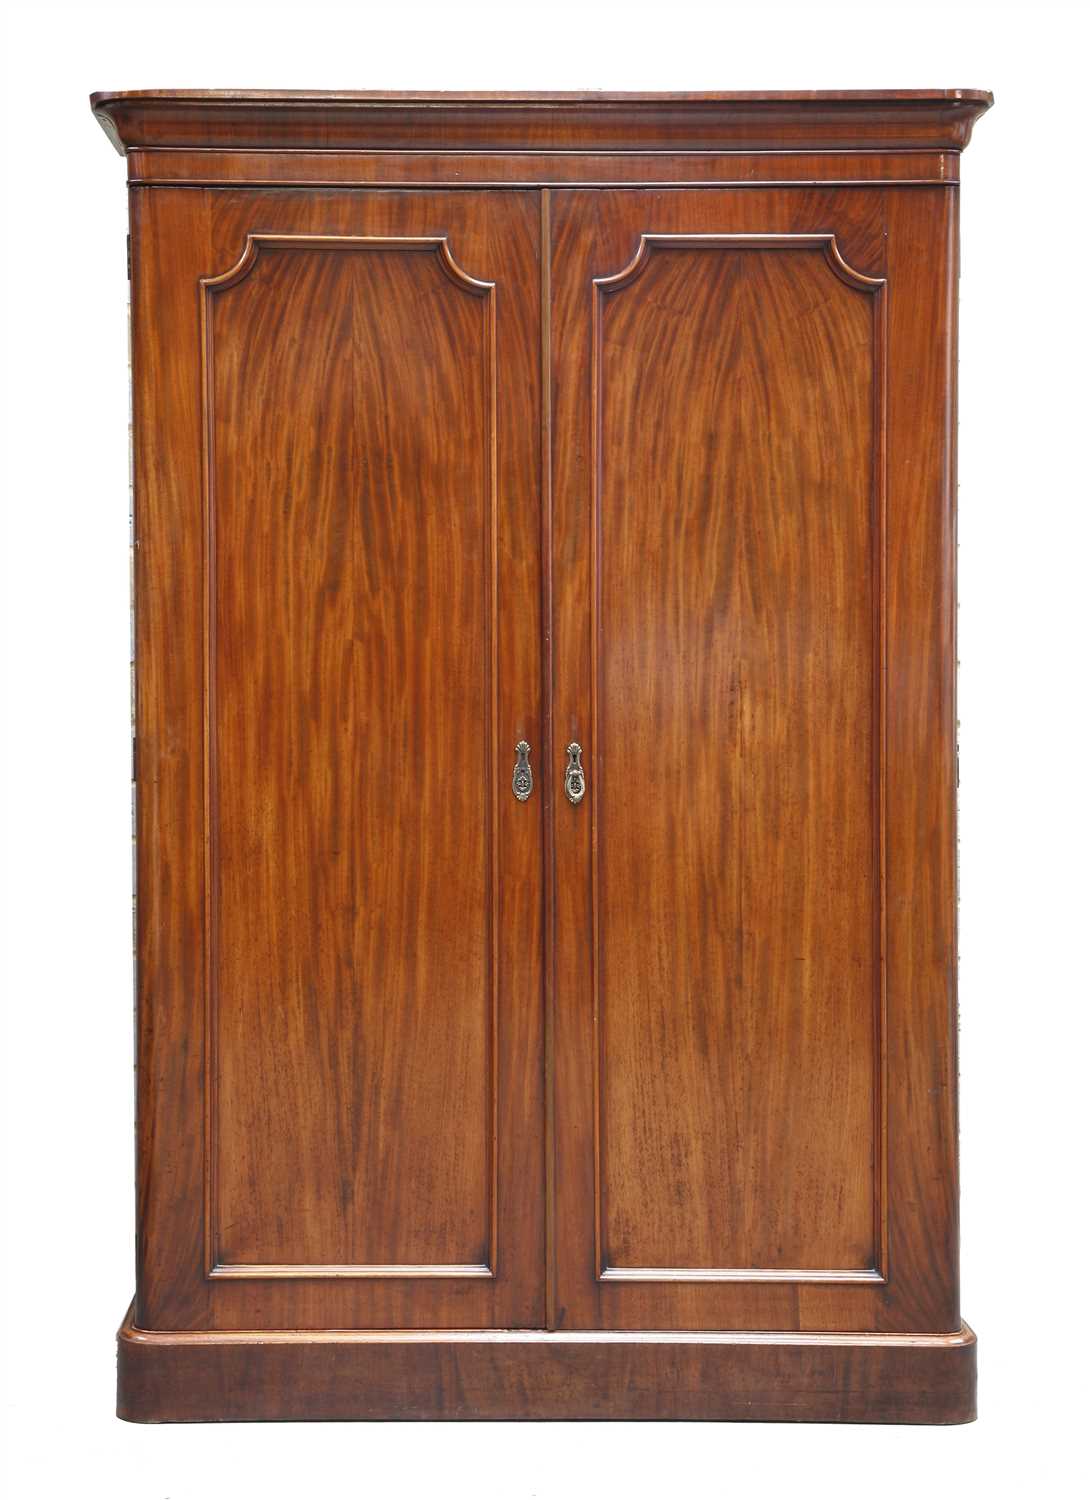 Lot 310 - A Victorian mahogany wardrobe